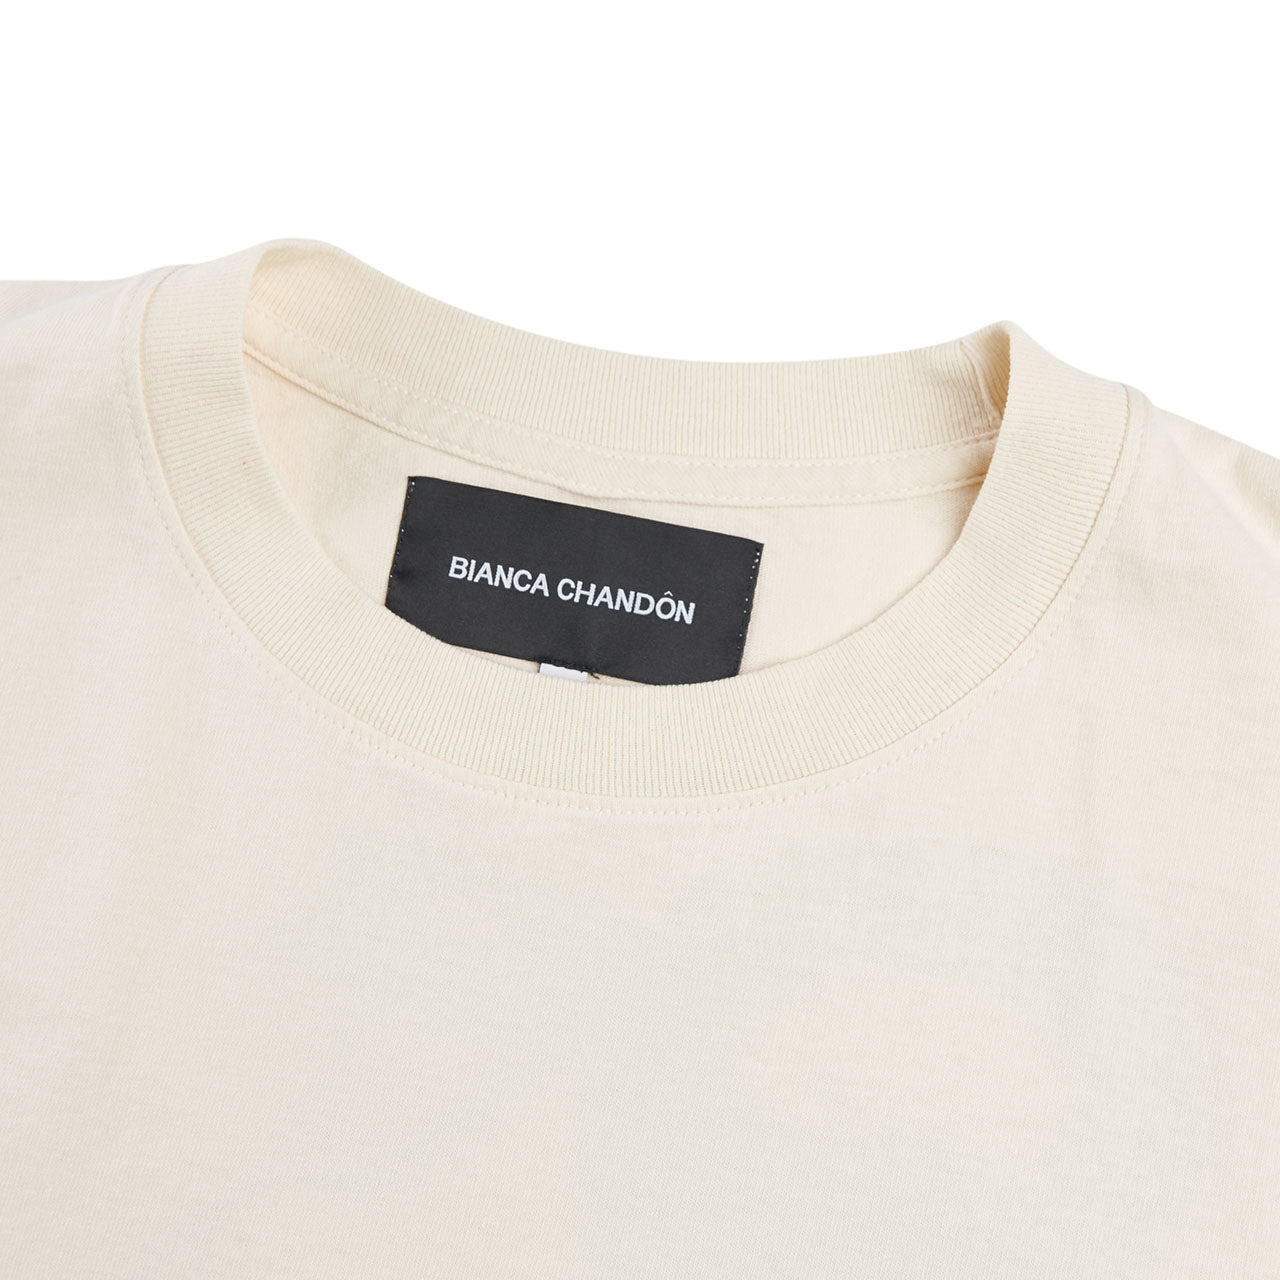 bianca chandôn italo disco t-shirt (cream)